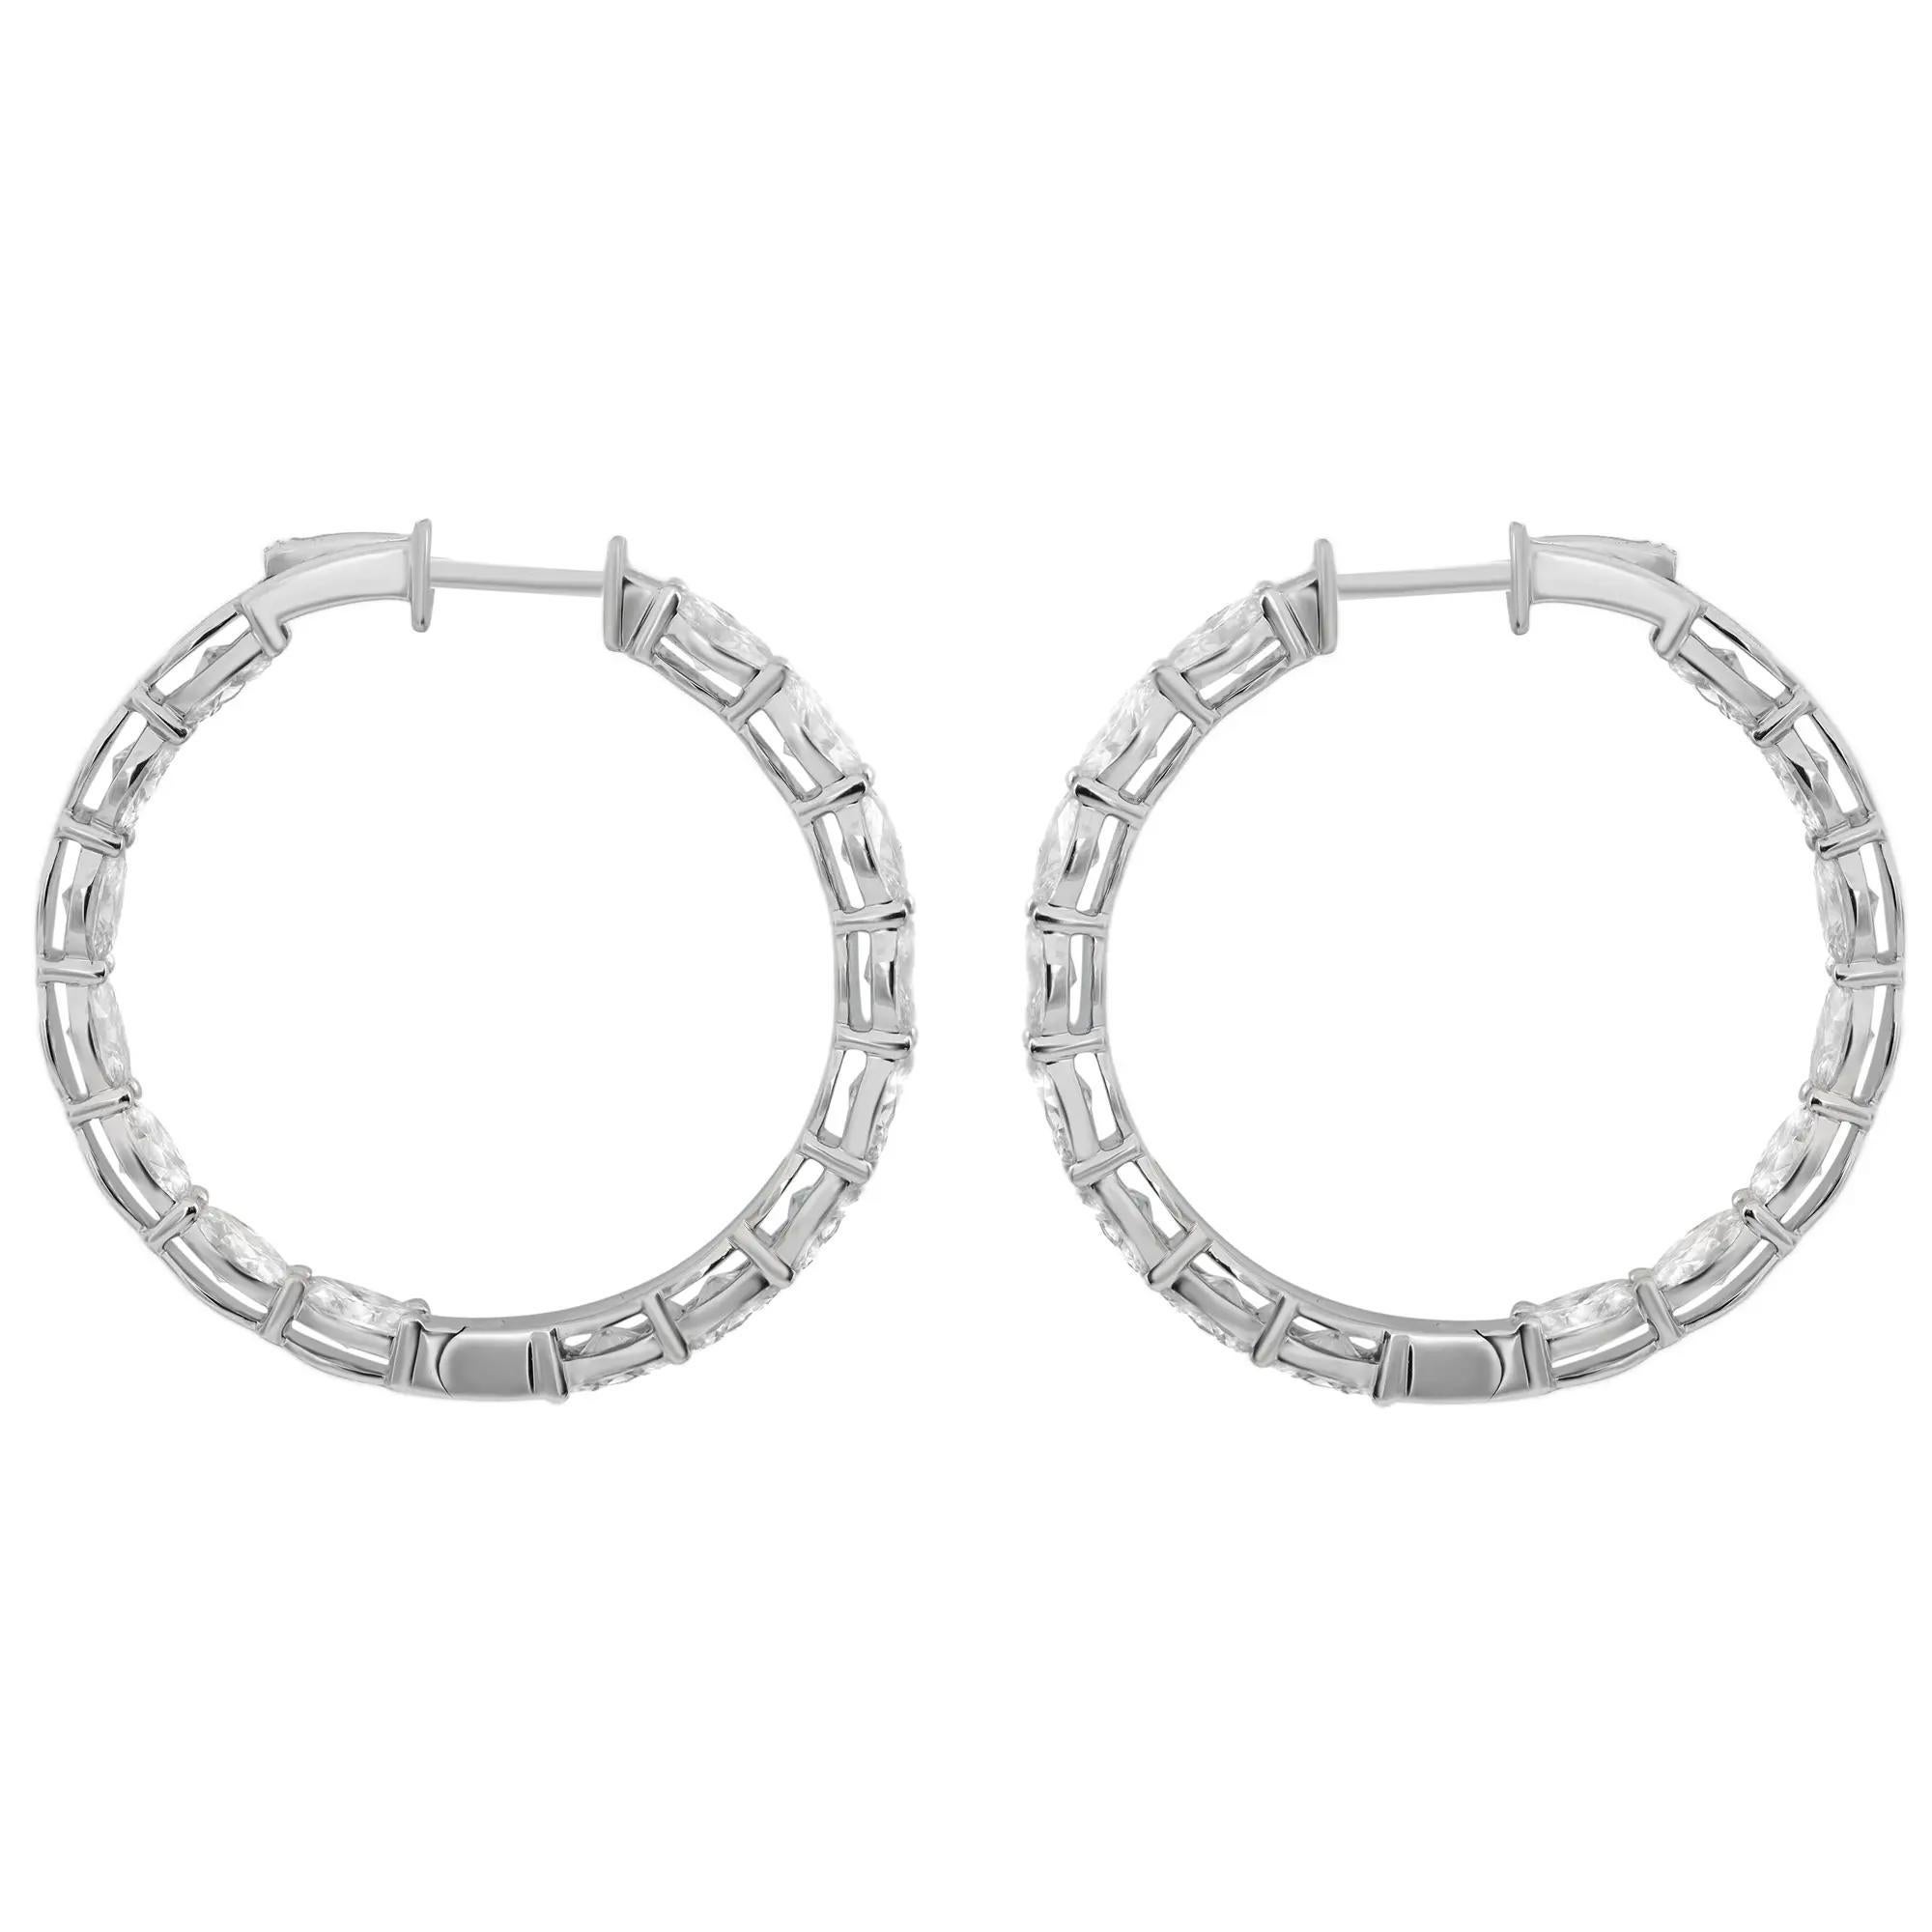 Modern Oval Cut Lab Grown Diamond Hoop Earrings 14K White Gold 6.24Cttw For Sale